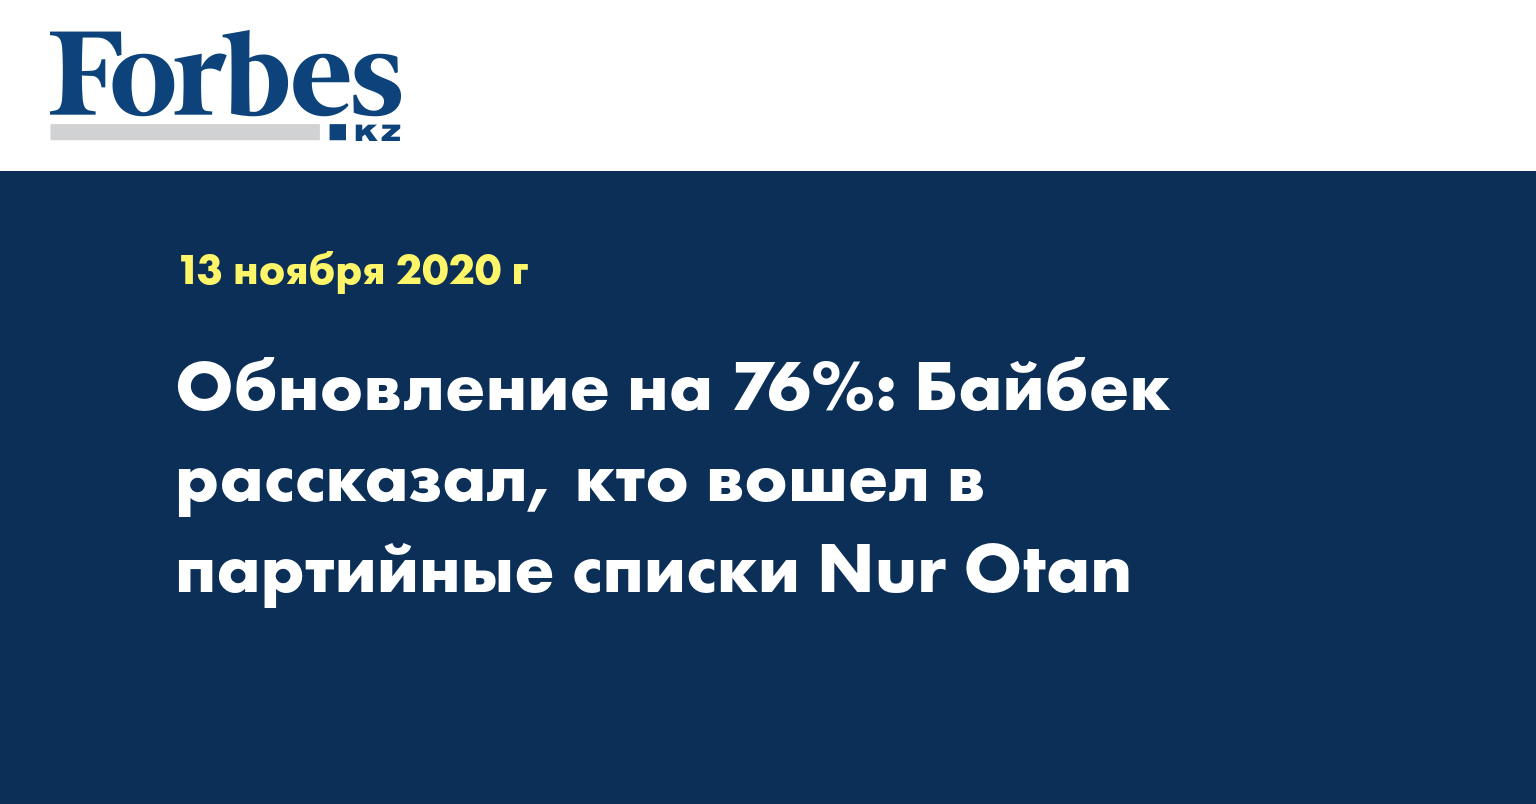 Обновление на 76%: Байбек рассказал, кто вошел в партийные списки Nur Otan